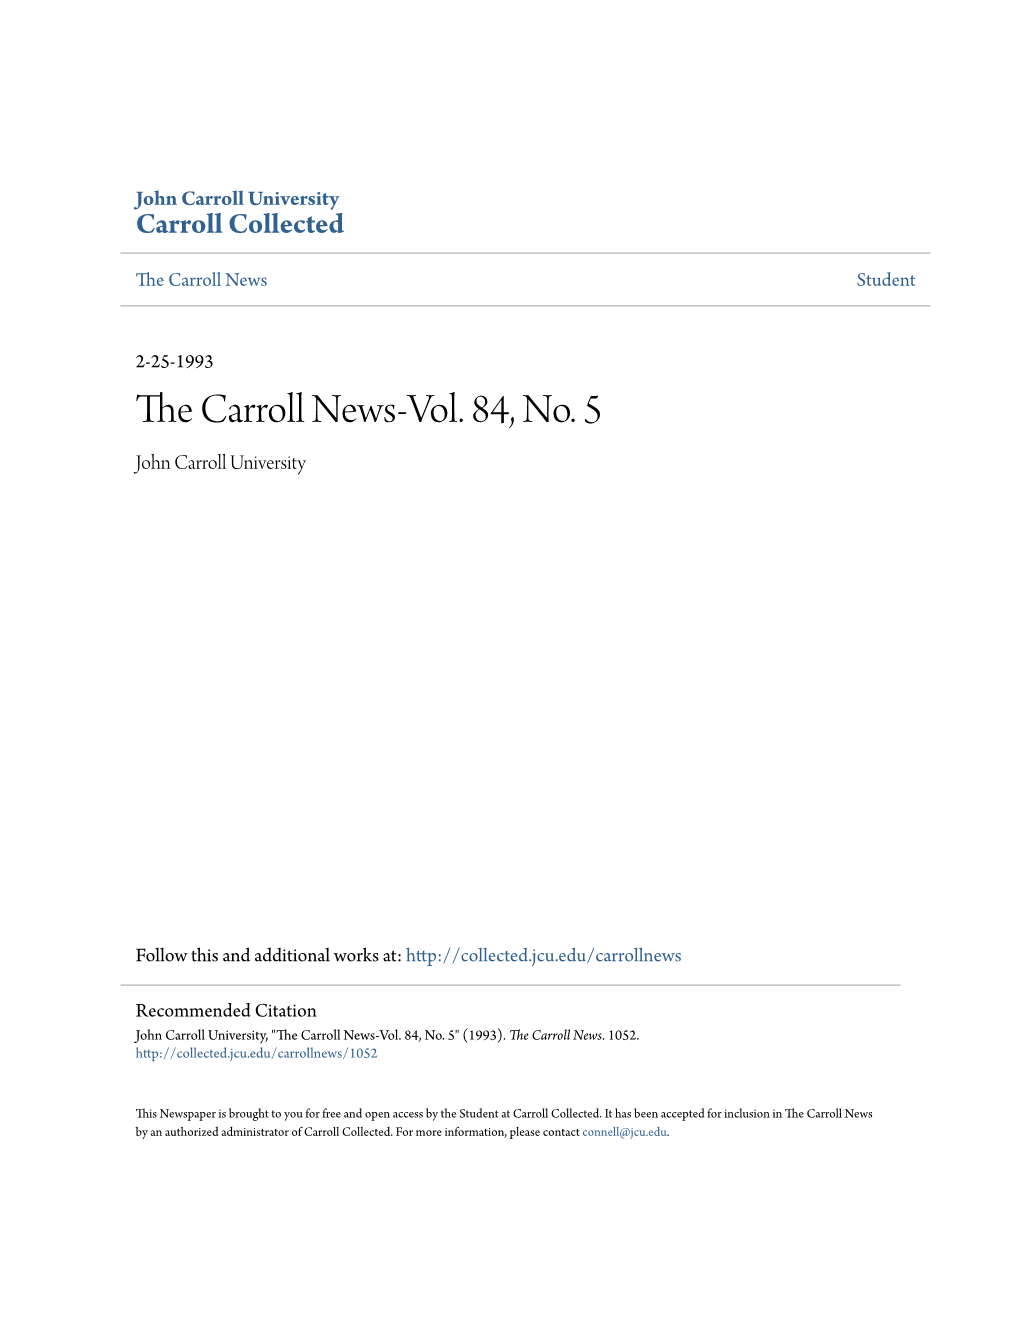 The Carroll News-Vol. 84, No. 5